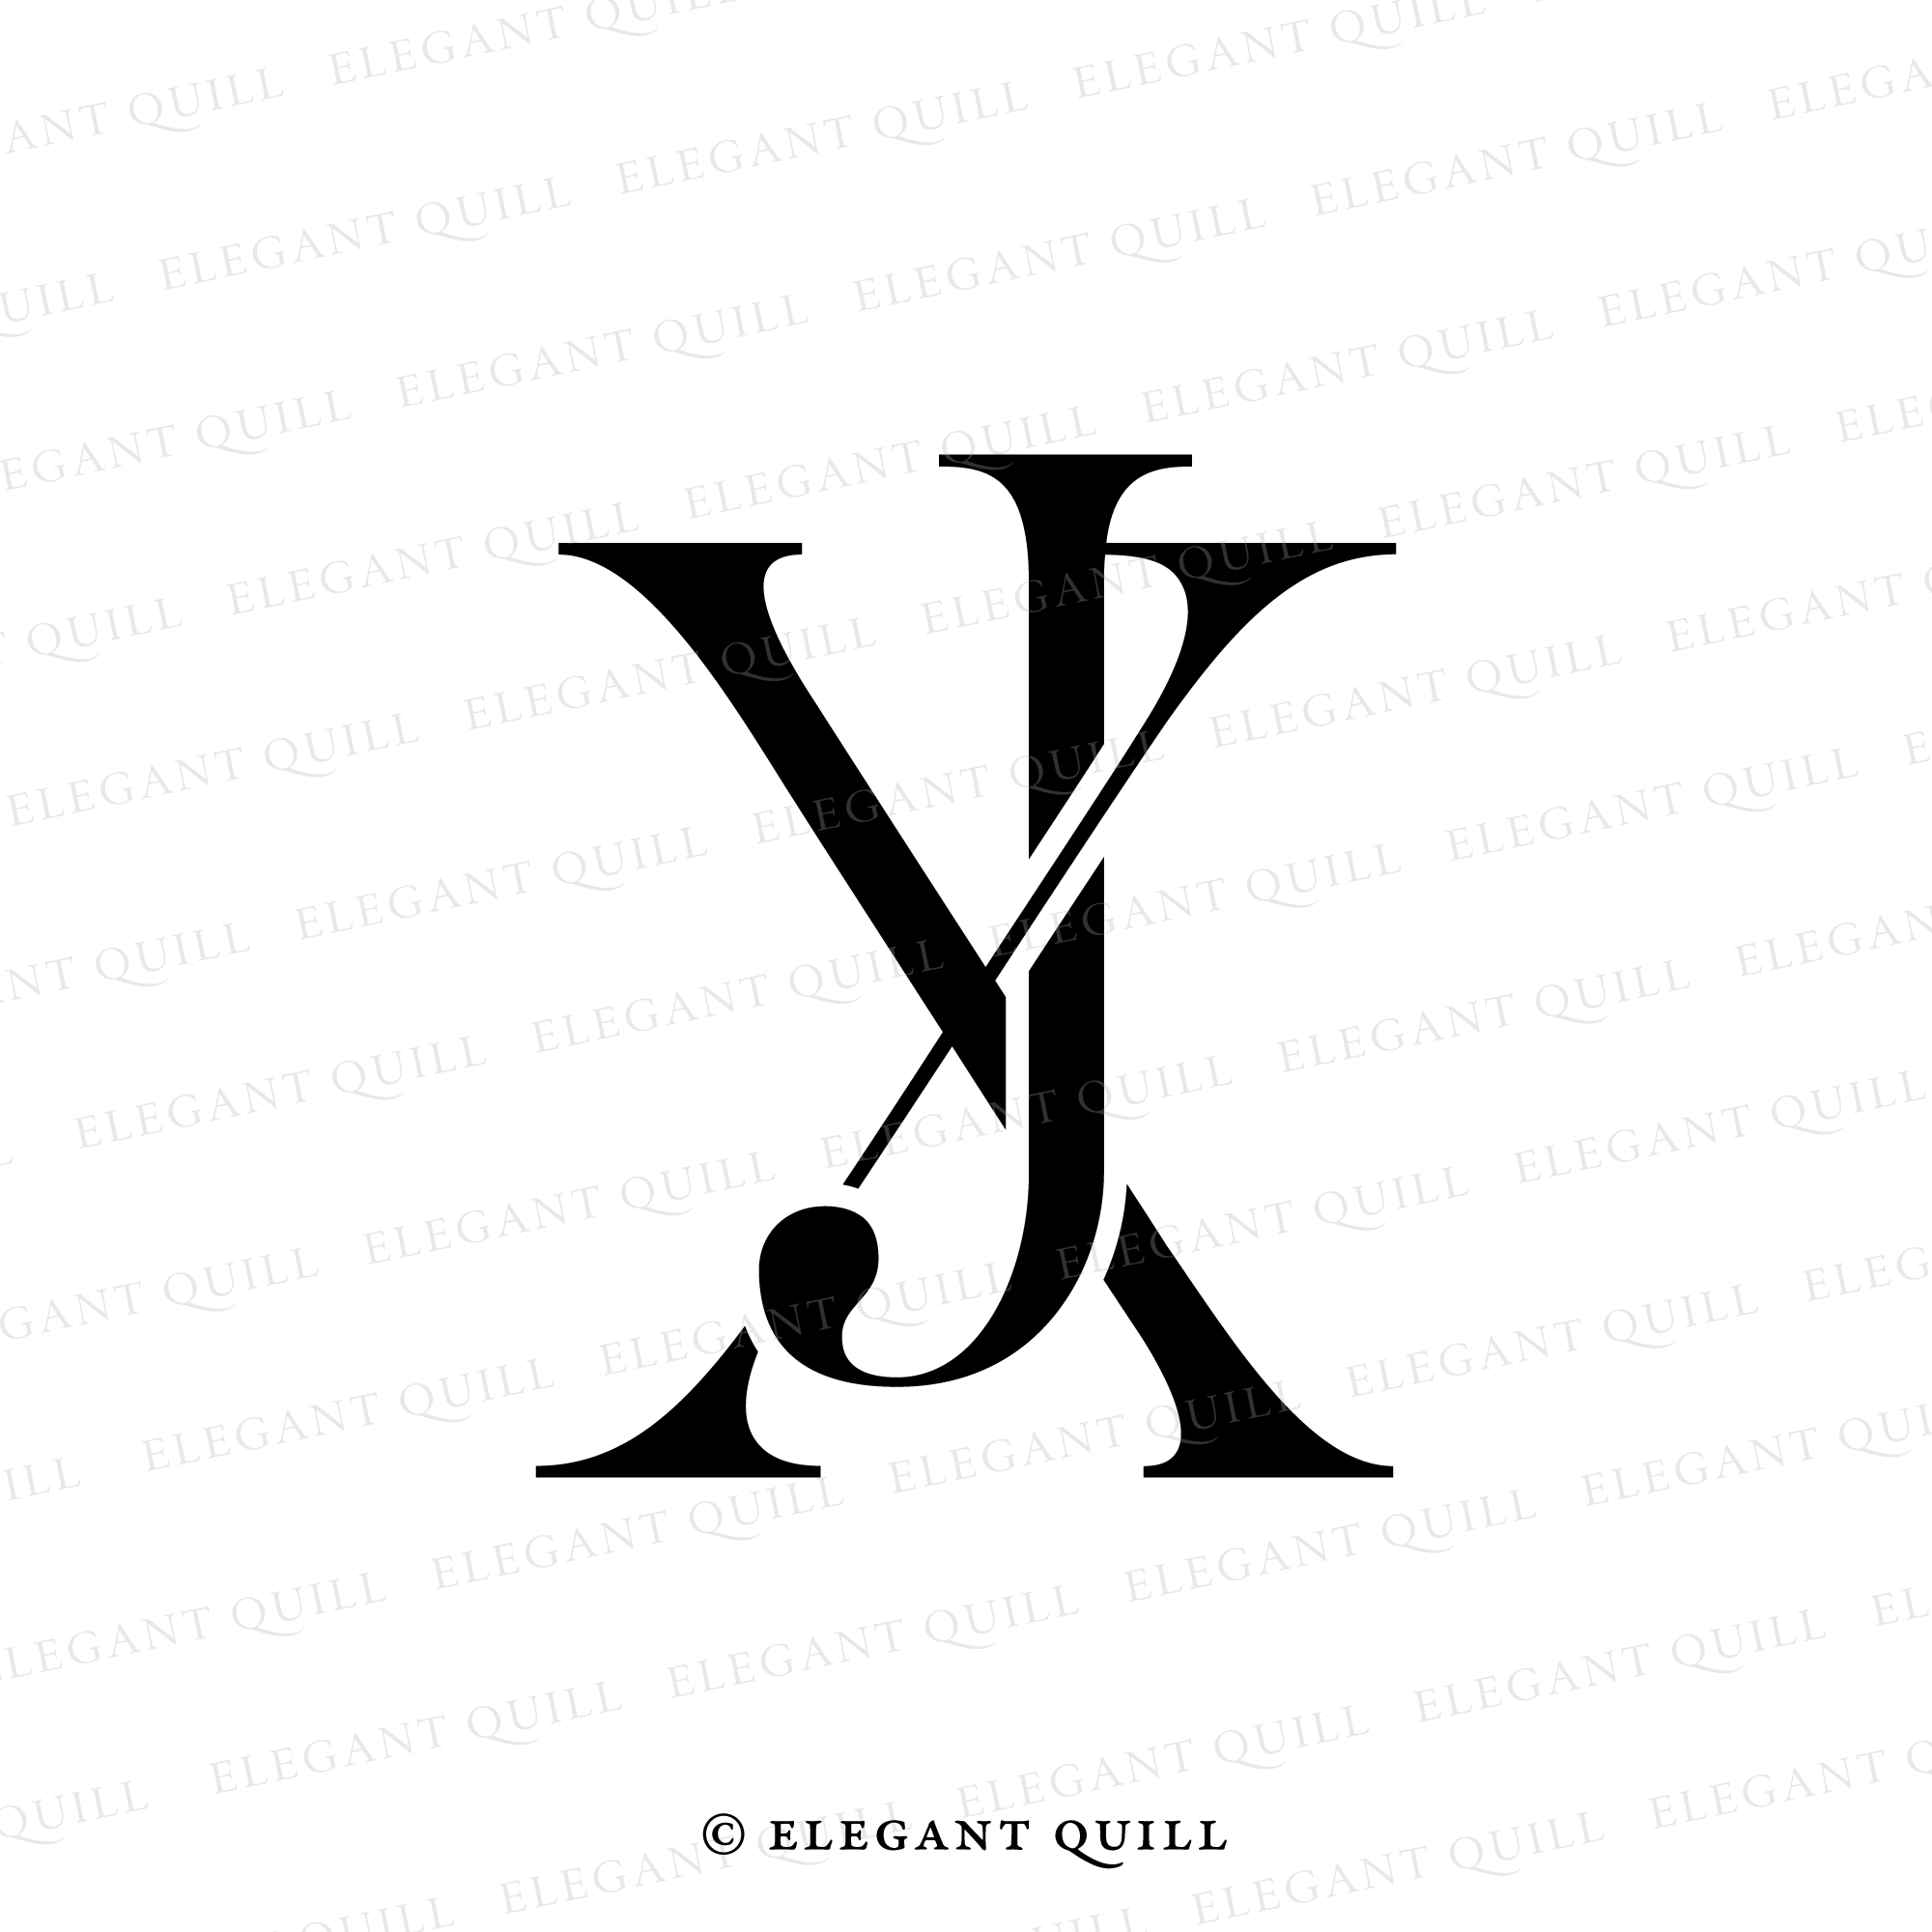 Louis Vuitton Monogram Alphabet Png, Louis Vuitton Png, Monogram Alphabet